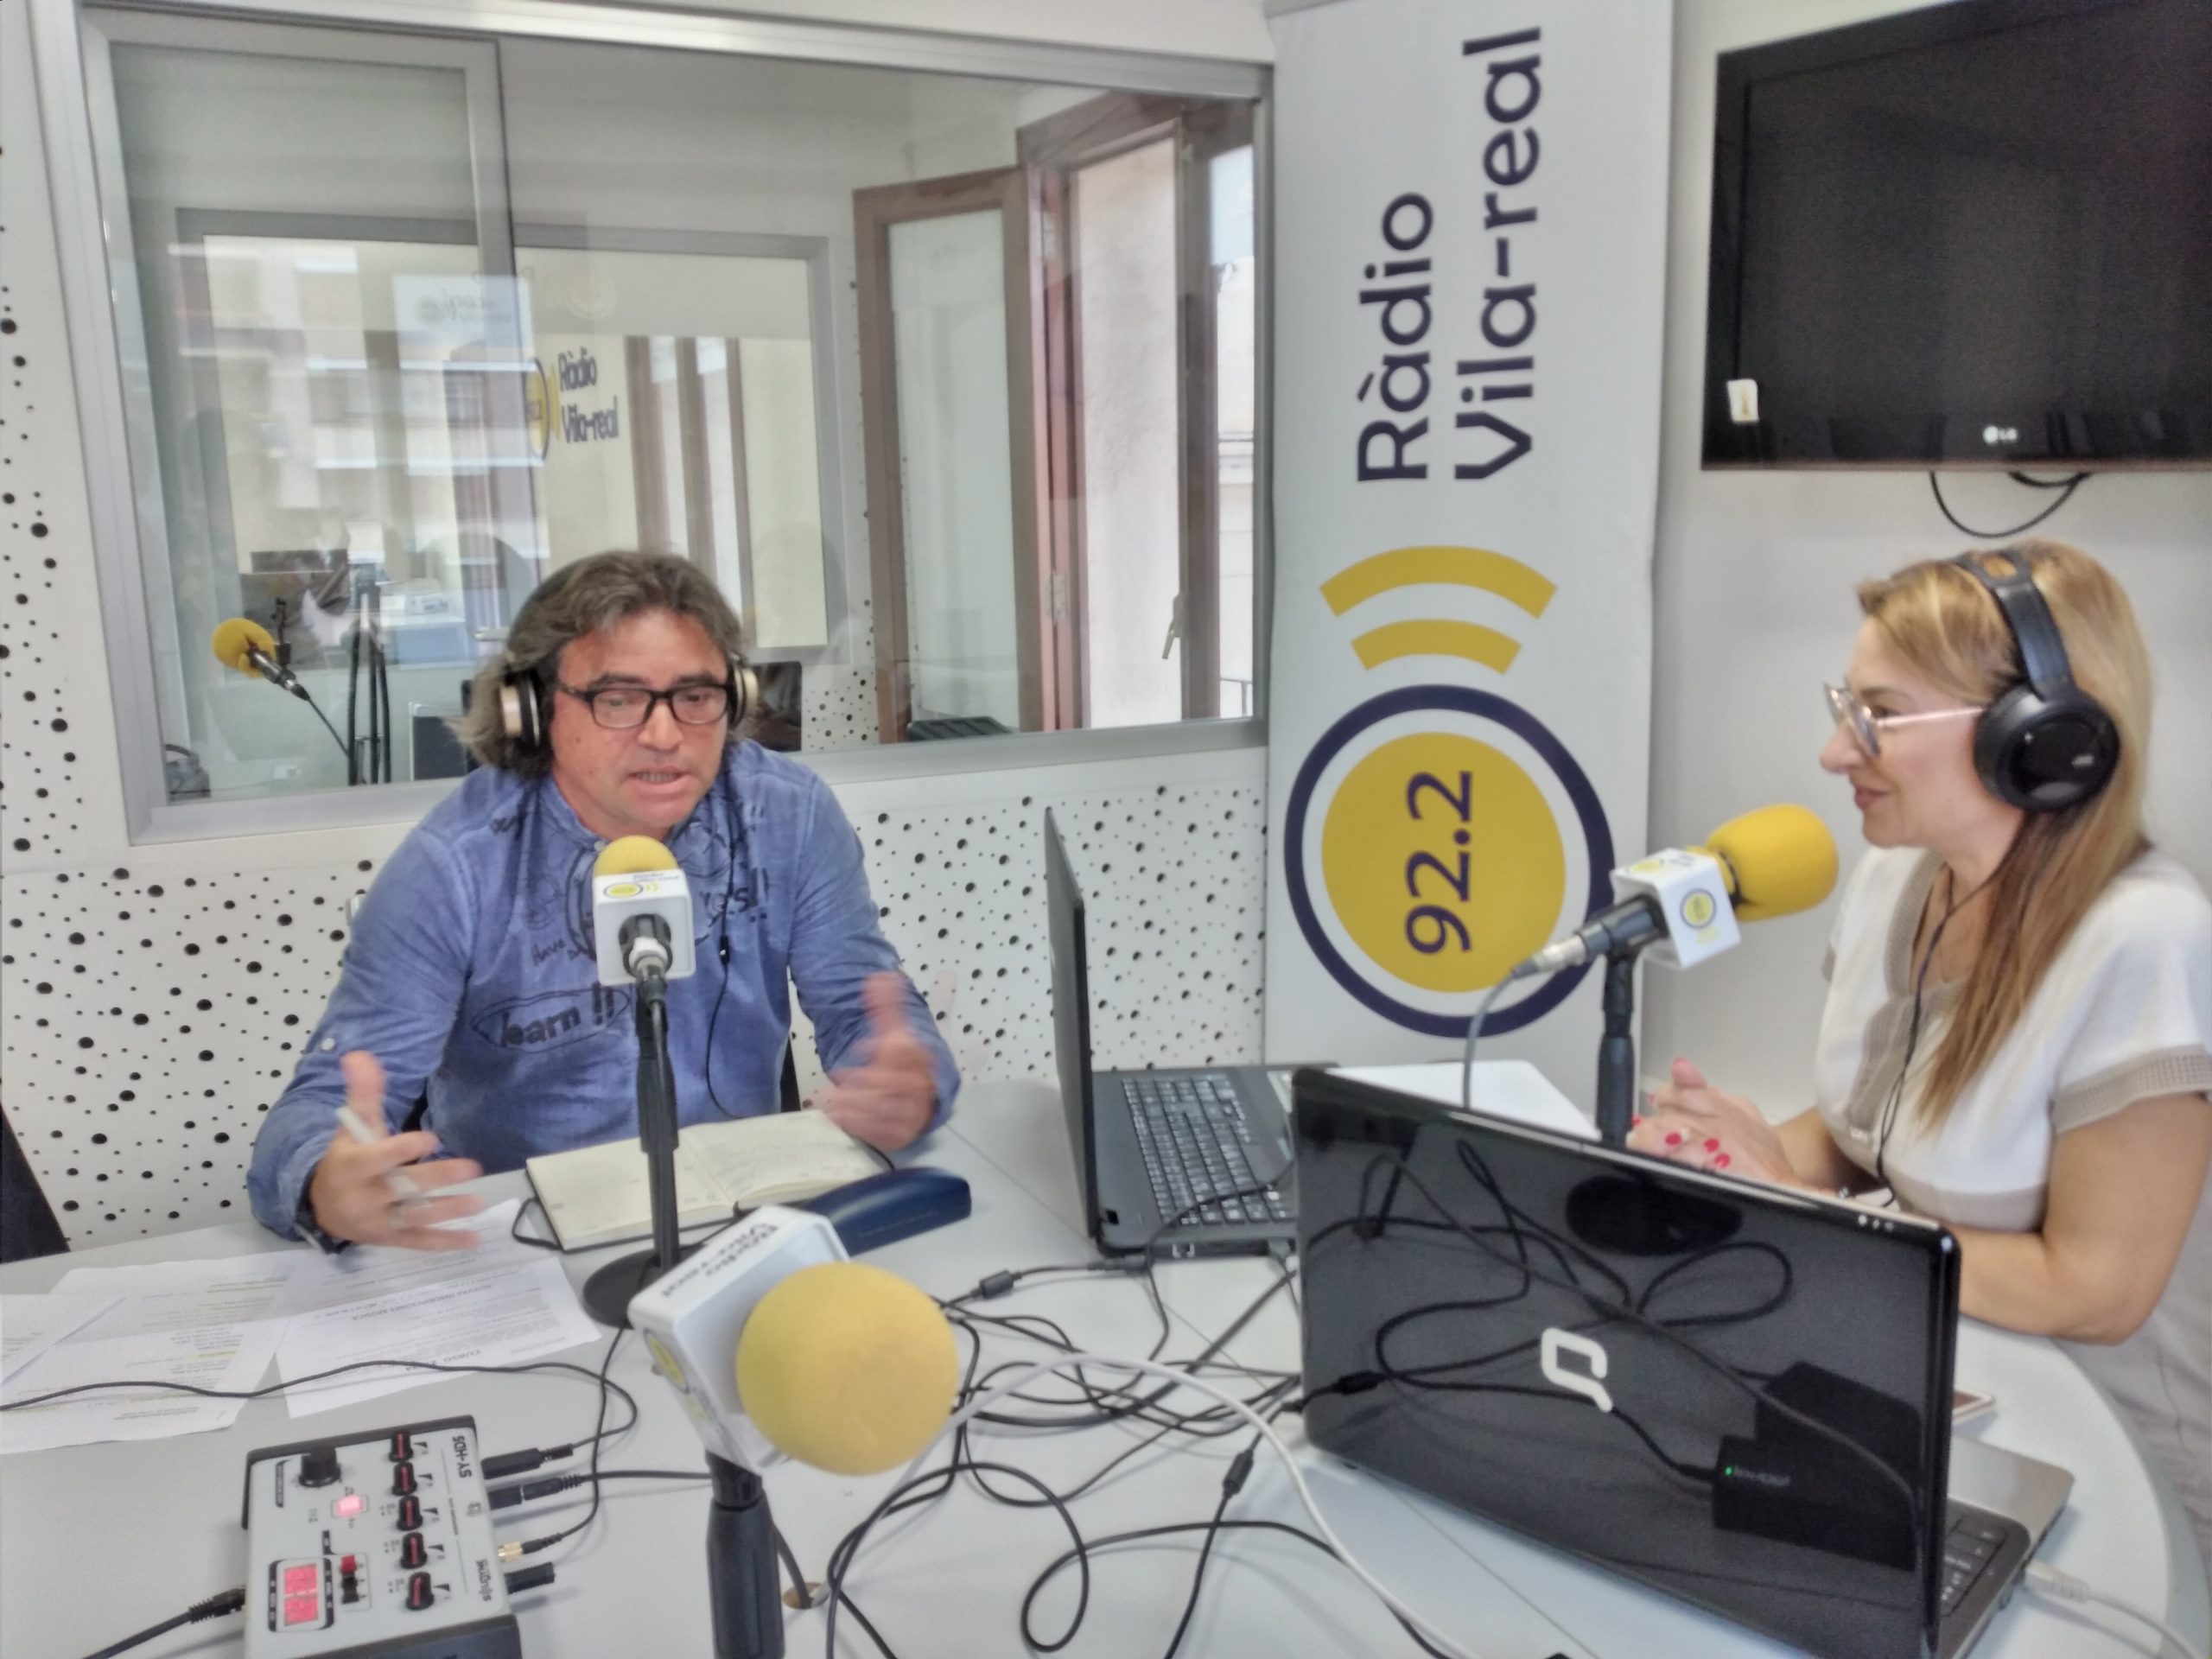 Parlem amb Michel Llorens, Director del Conservatori Mestre Goterris